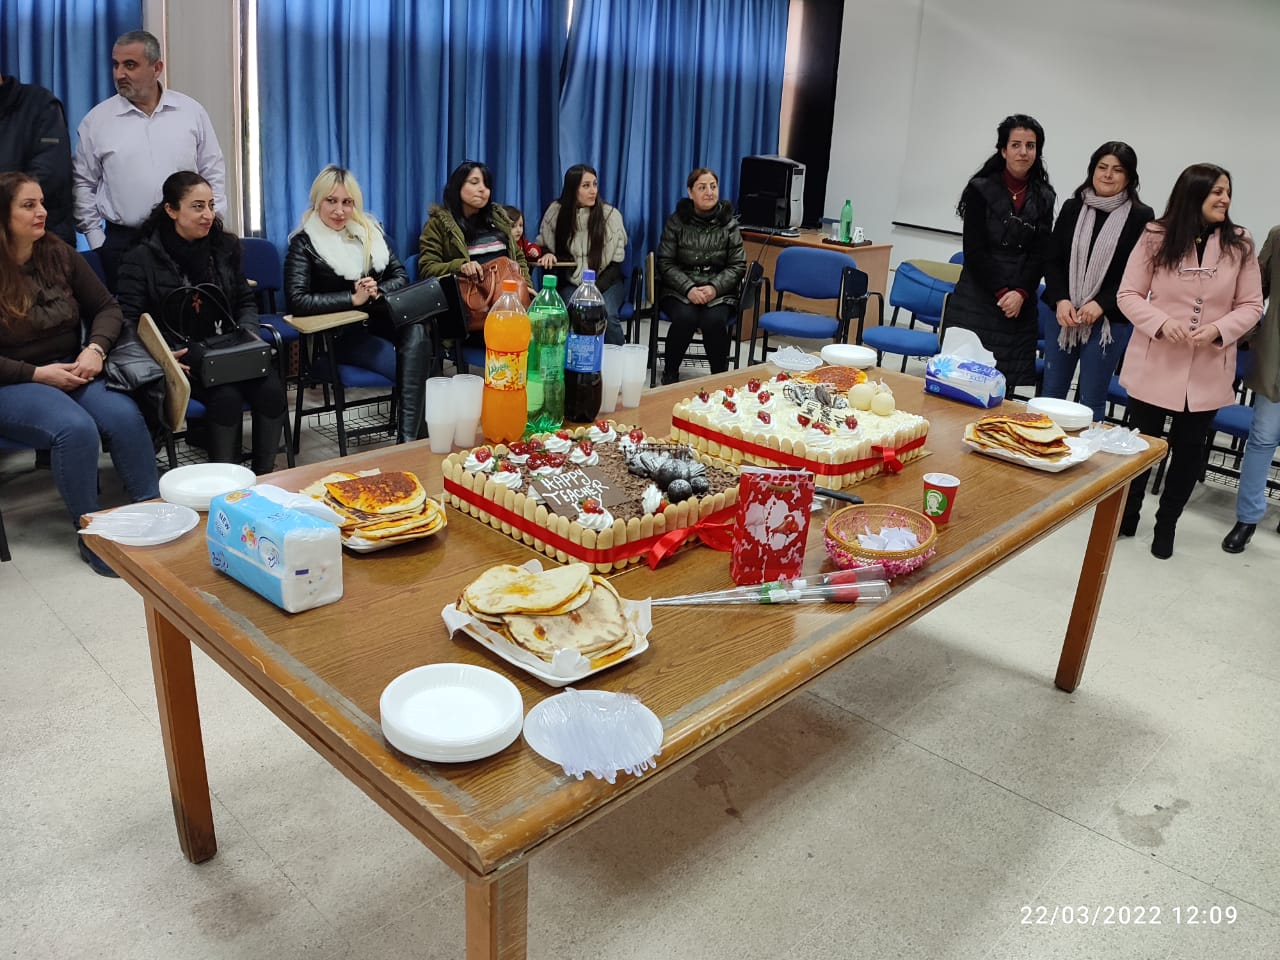 المعهد العالي للغات أقام أحتفالاً بعيد المعلم وعيد الأم يوم 22-3-2022